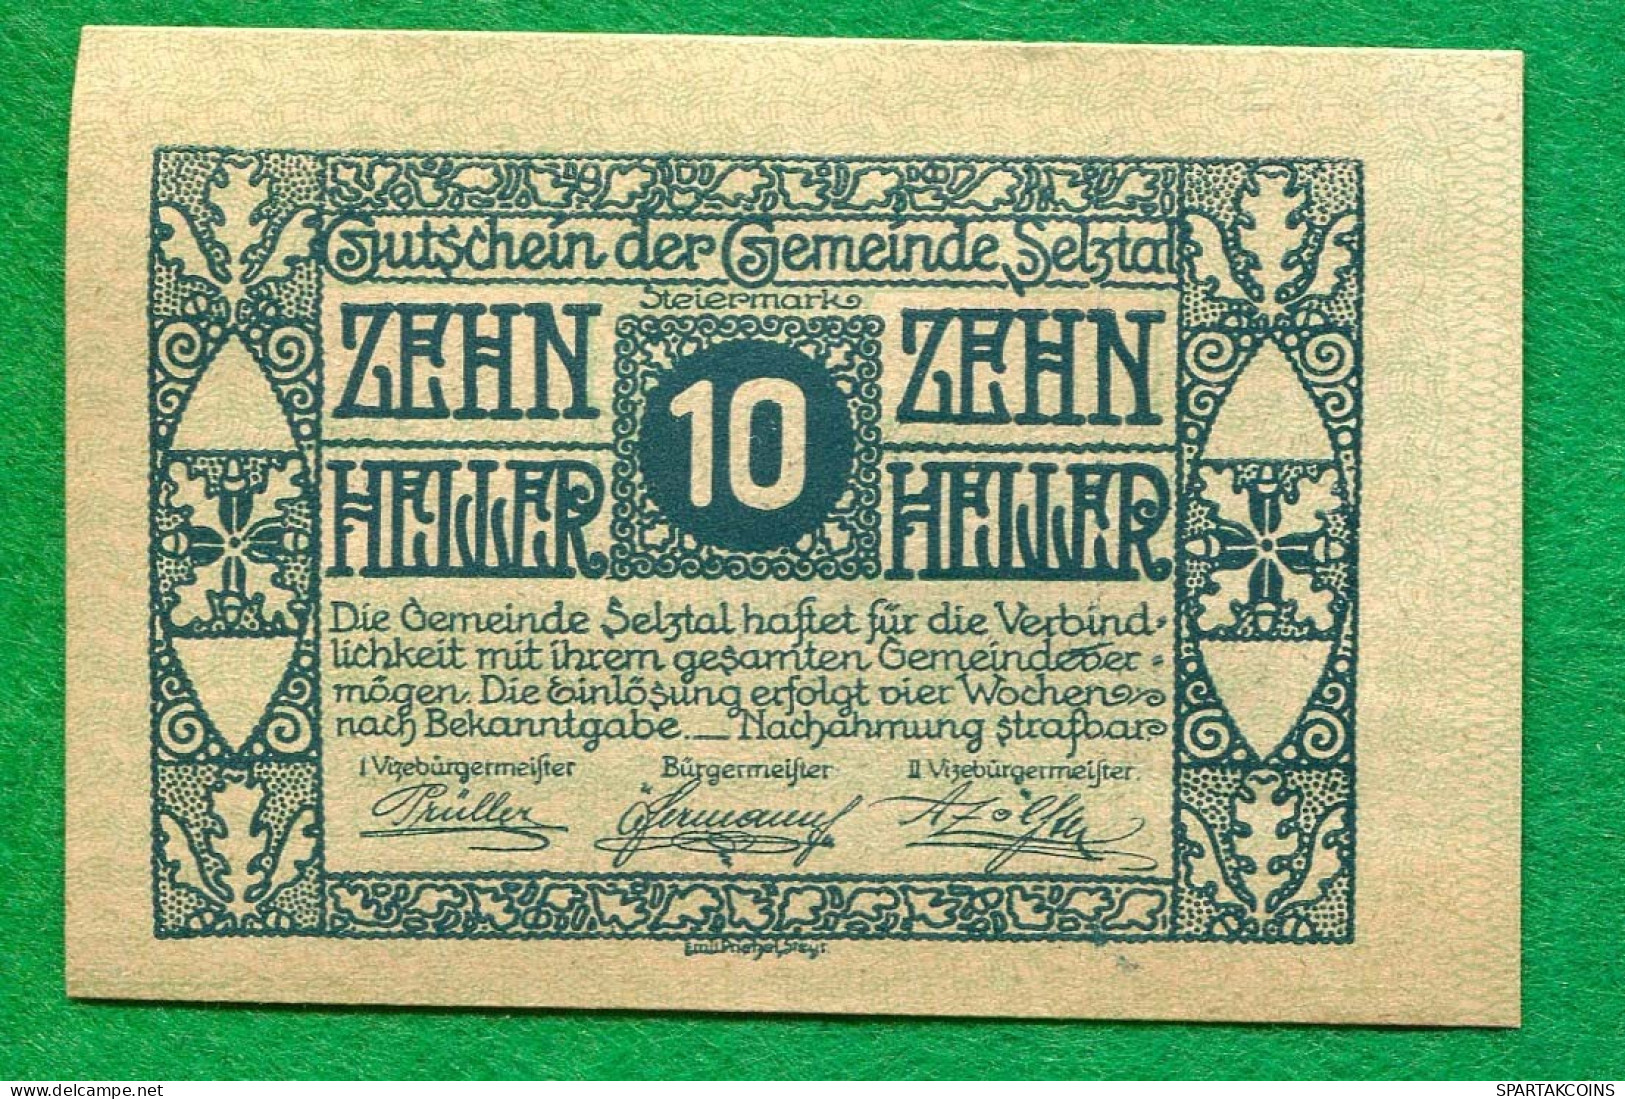 10 Heller 1920 SELZTA Österreich UNC Notgeld Papiergeld Banknote #P10509 - [11] Local Banknote Issues